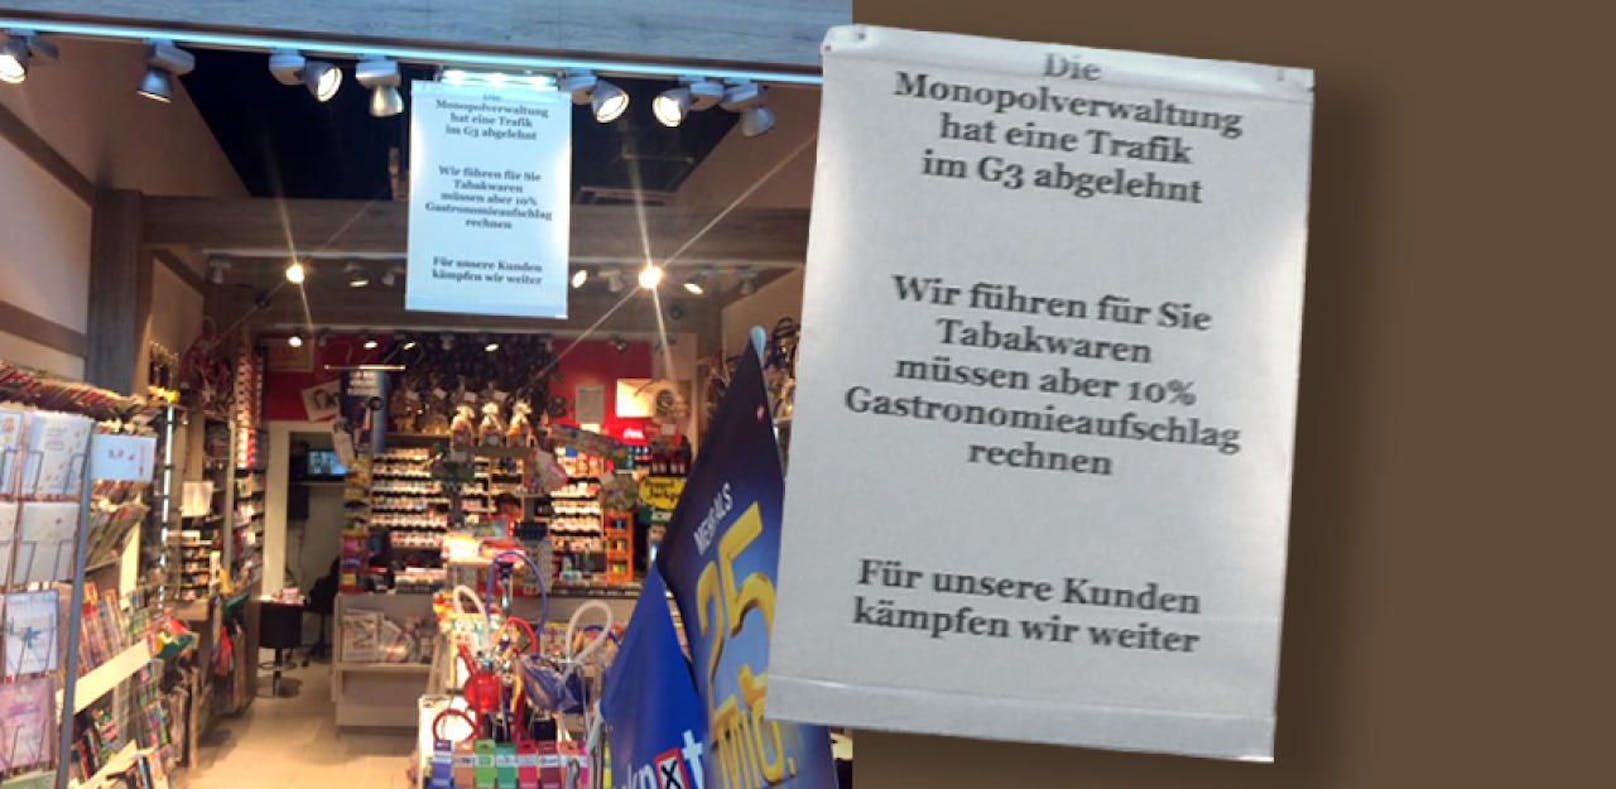 10 Prozent Aufschlag für Zigaretten in Shop im Gerasdorfer G3.